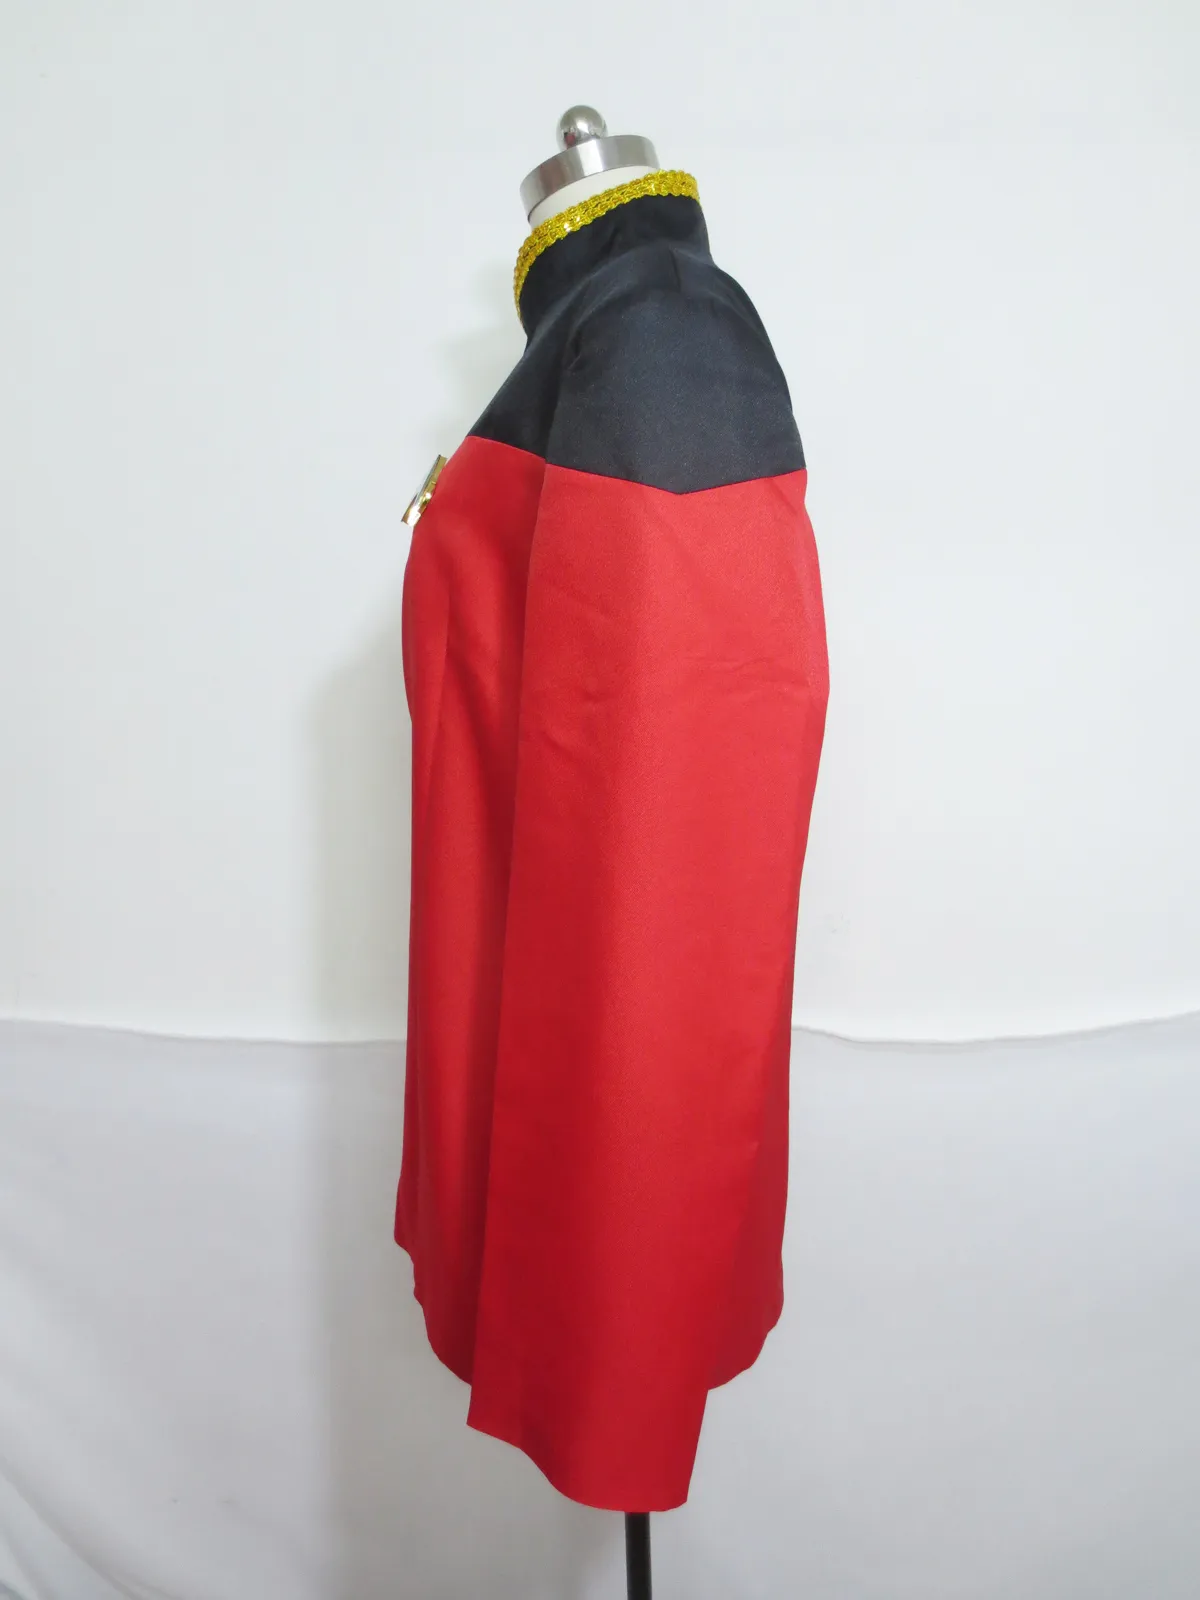 Star Trek Tng Picard Veste Costume Rouge Red Cosplay